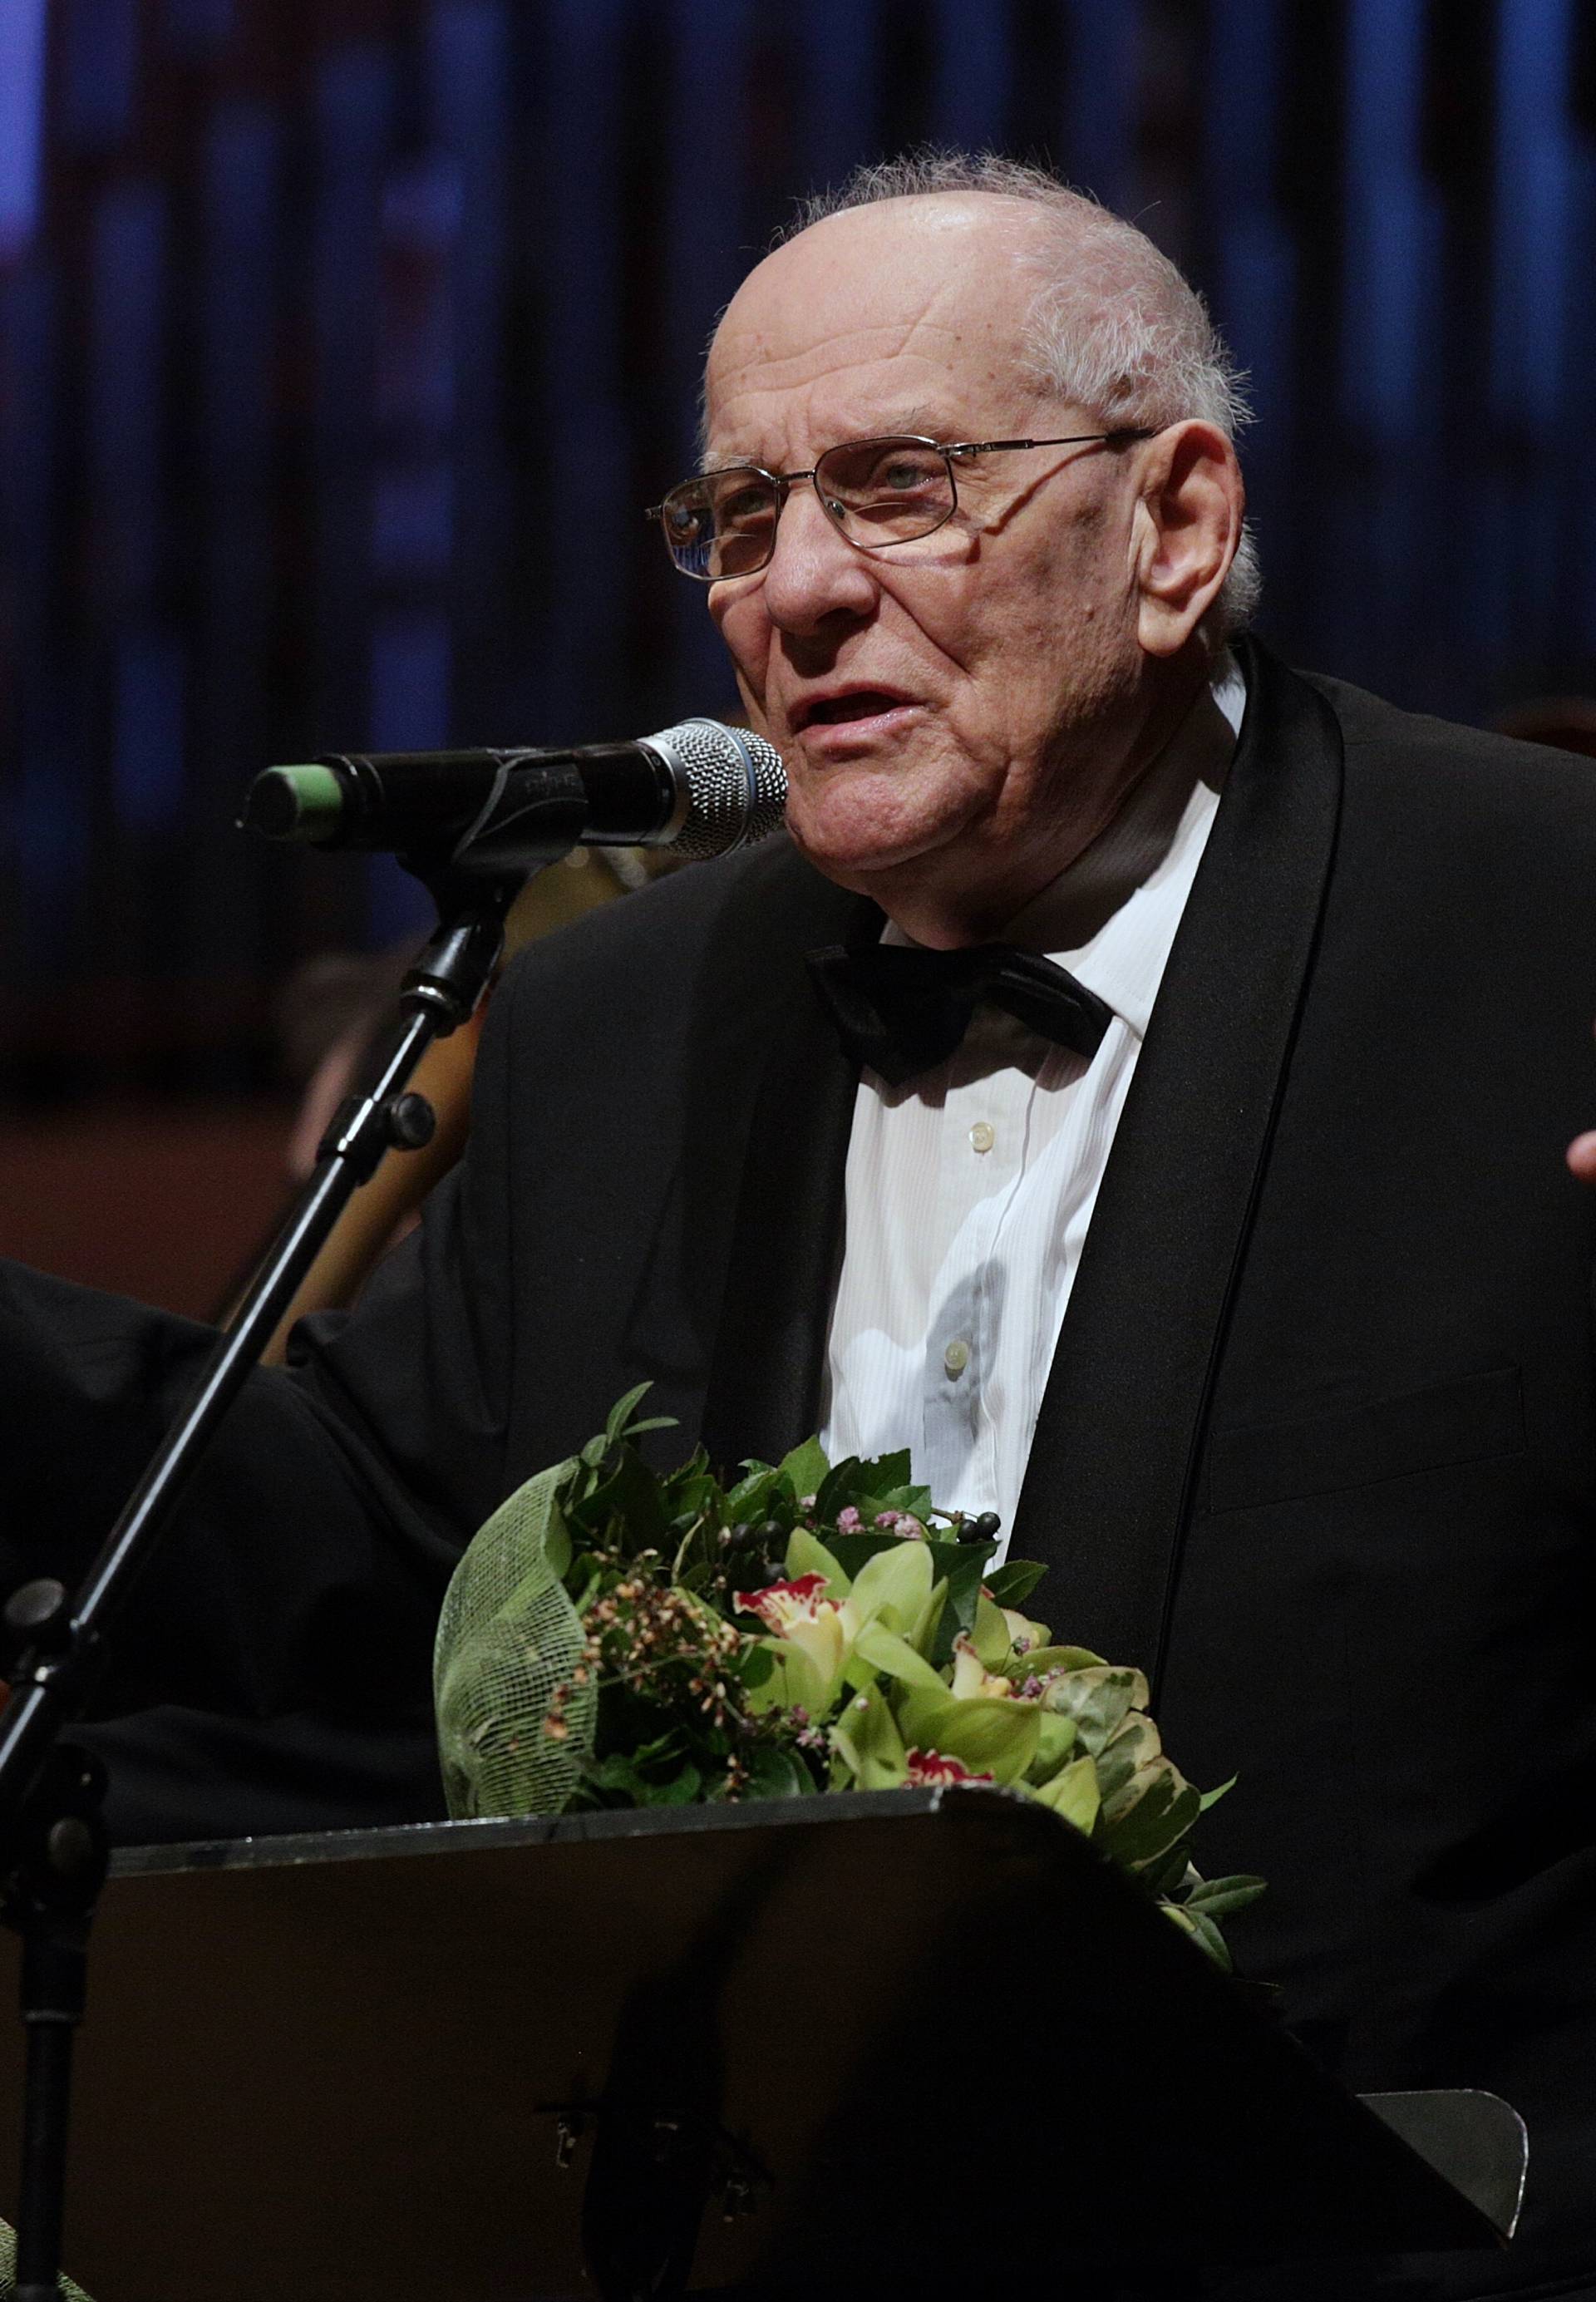 Preminuo je maestro Vladimir Kranjčević nakon teške bolesti